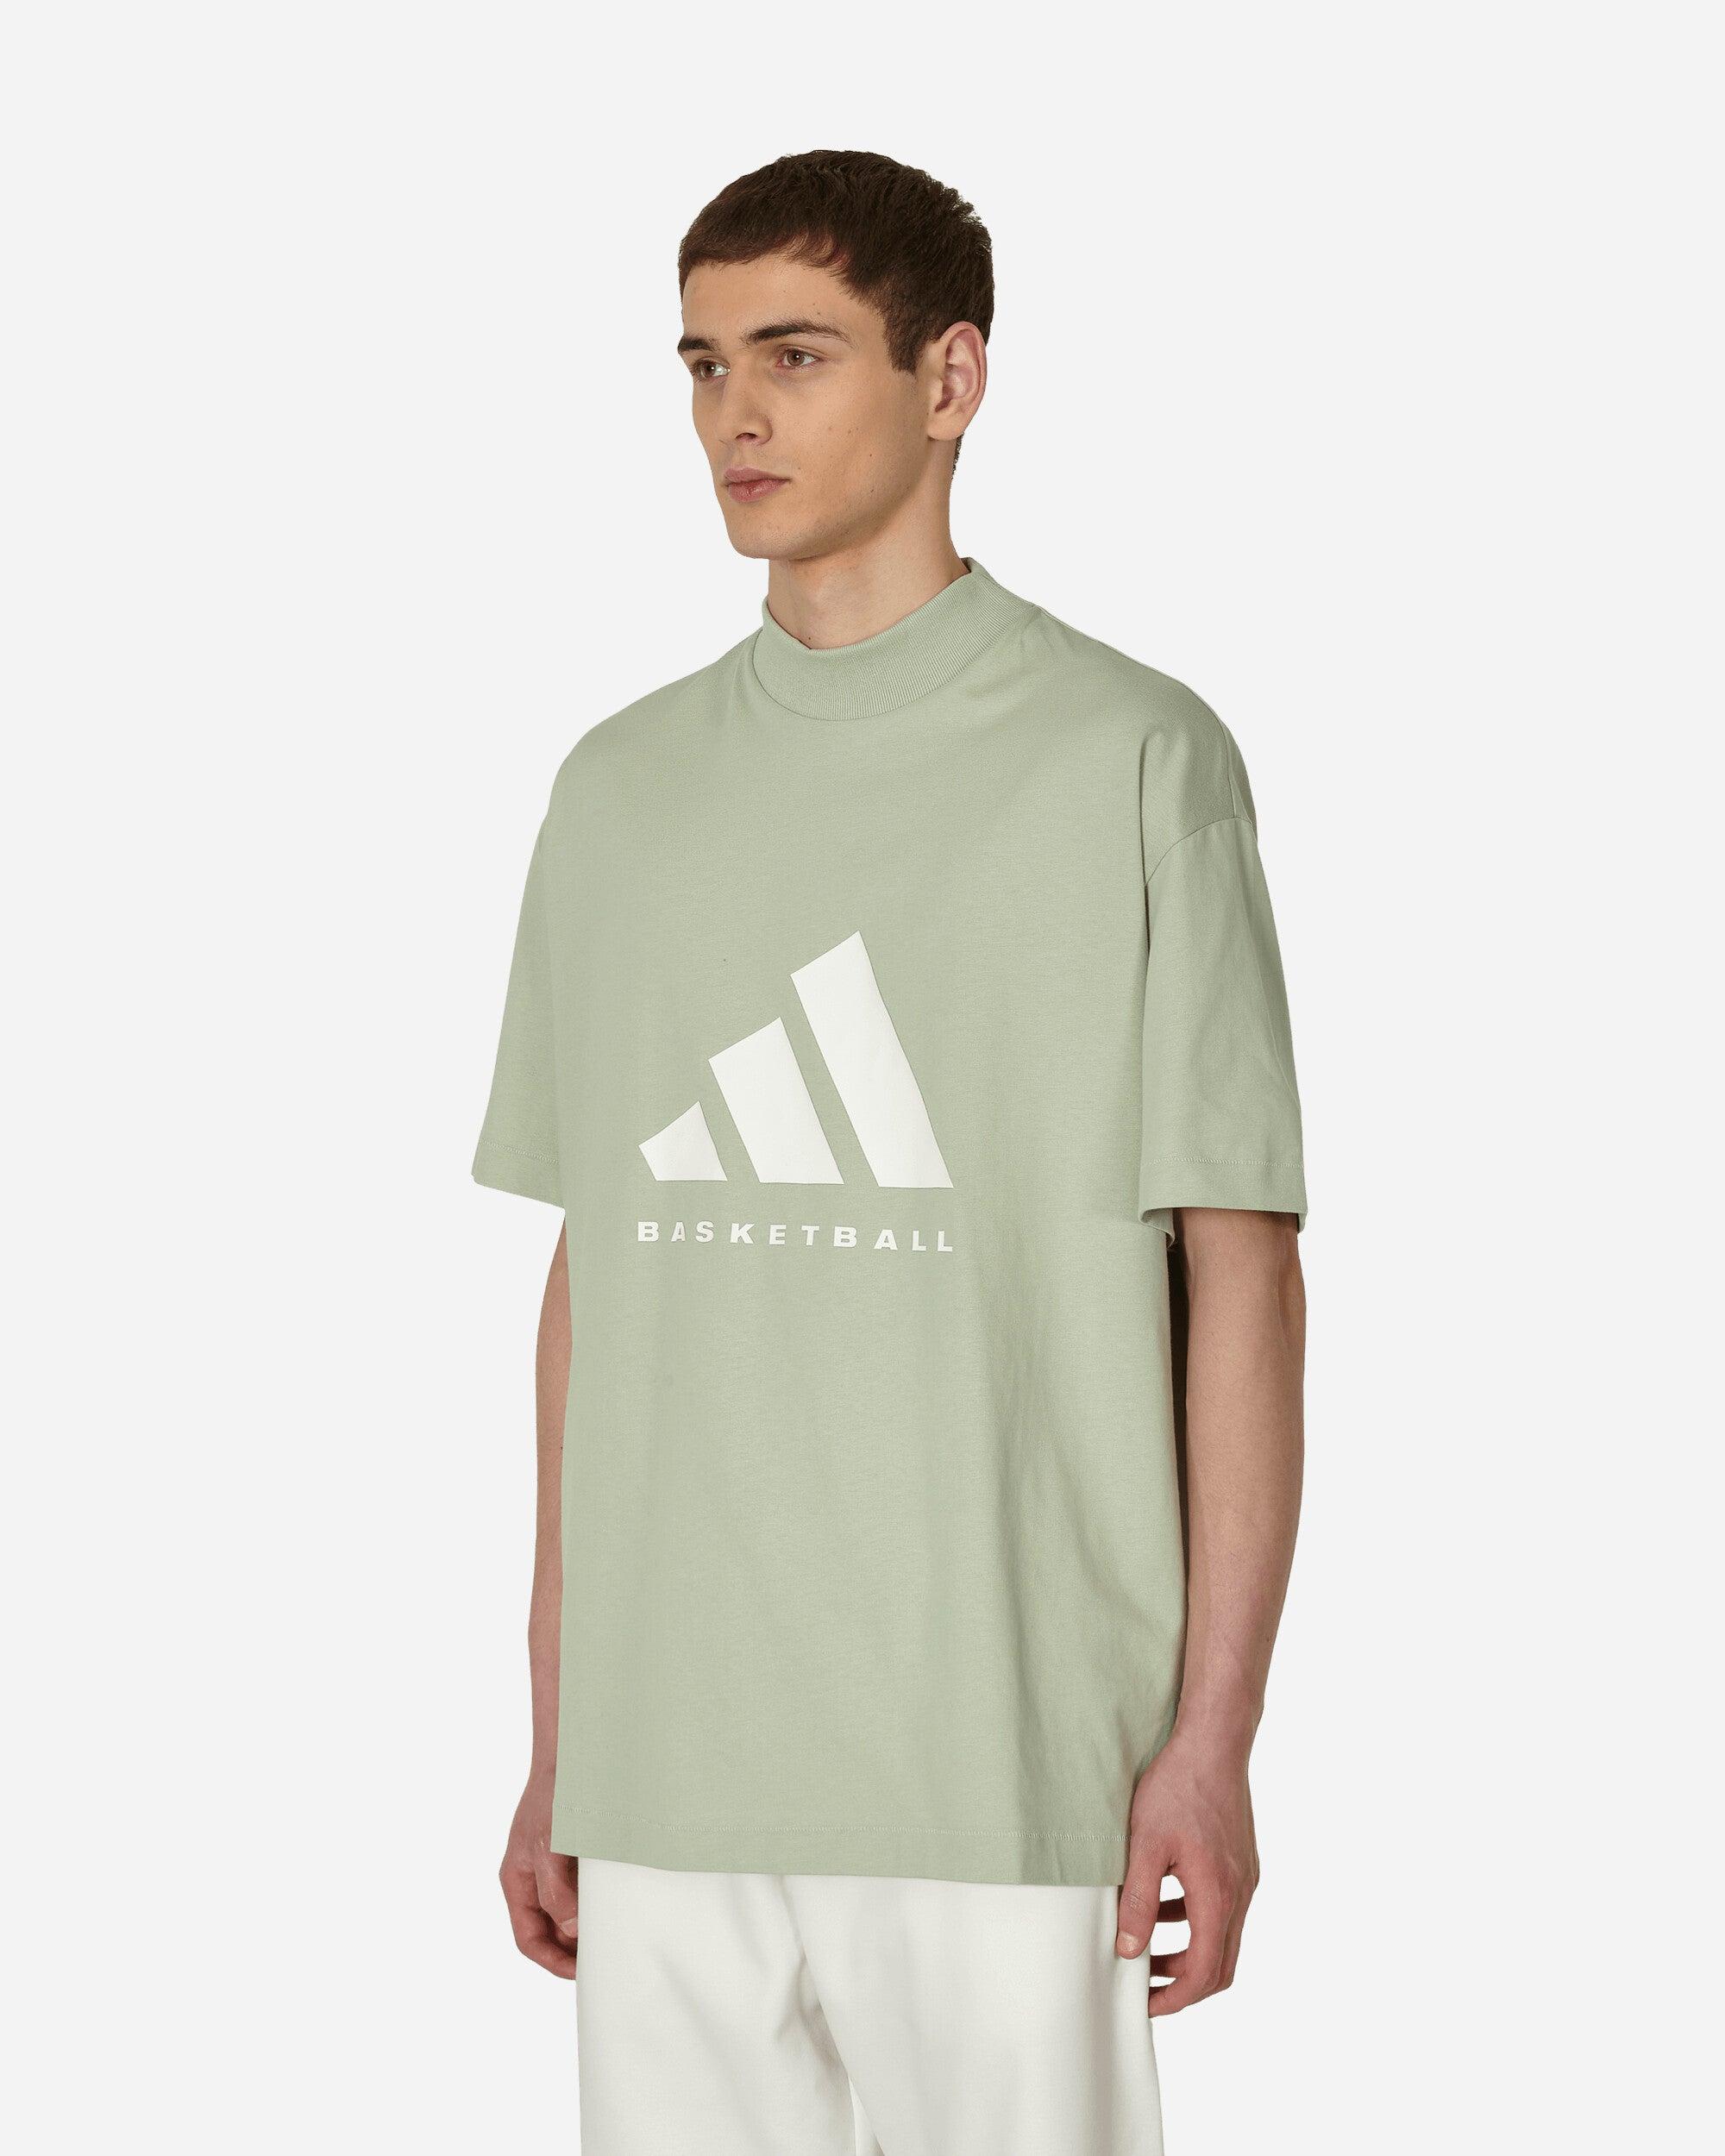 adidas, Shirts, Adidas James Harden T Shirt